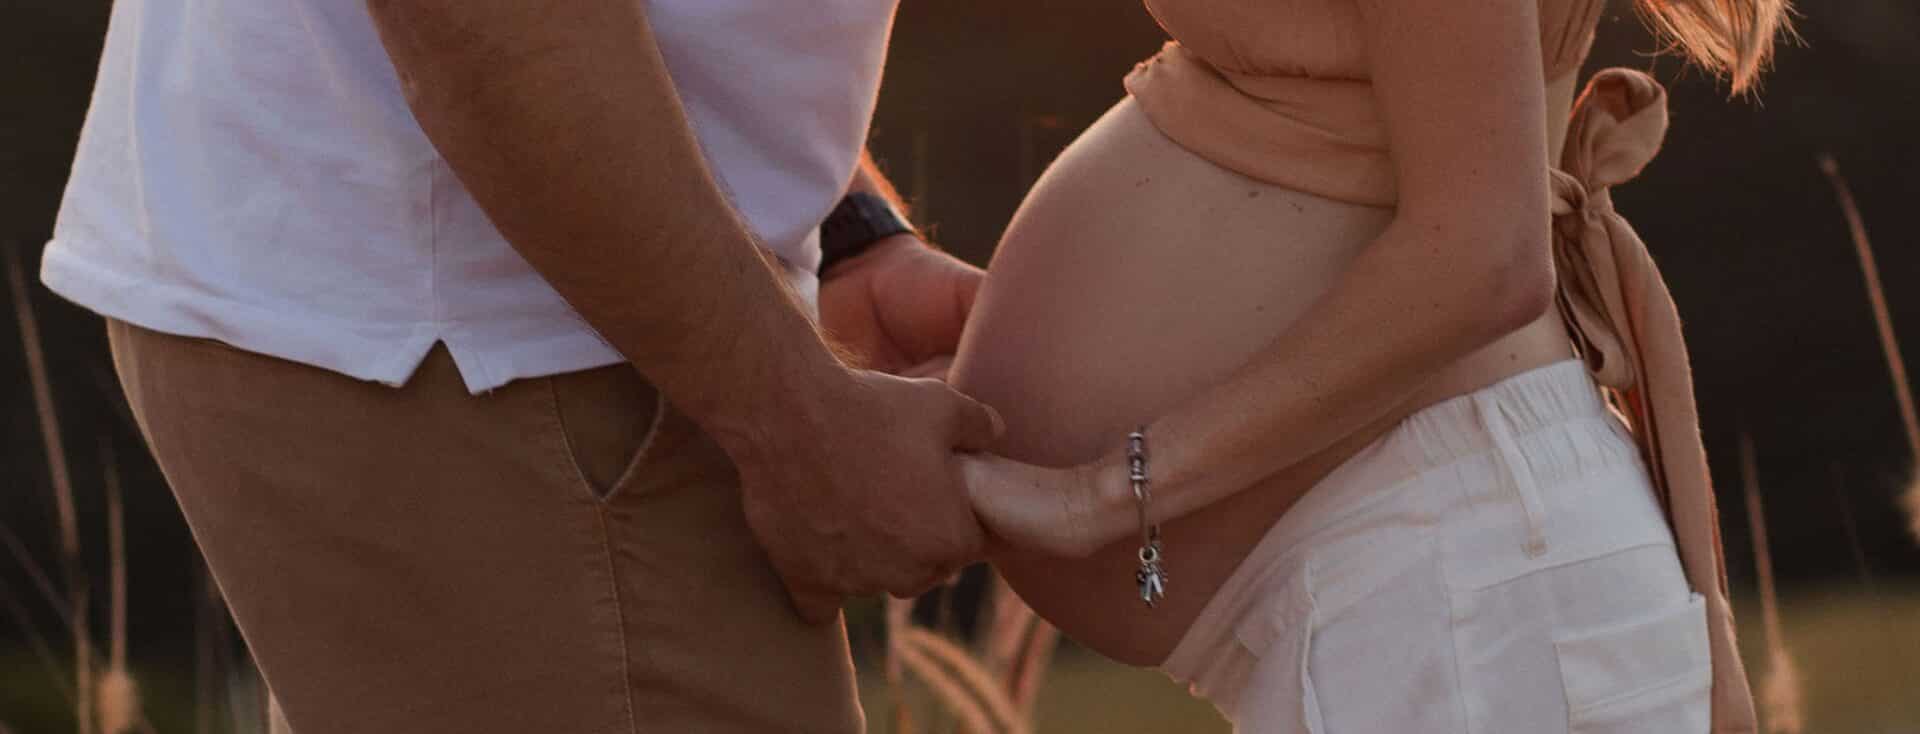 Homem e mulher grávida, um de frente para o outro, de mãos dadas.